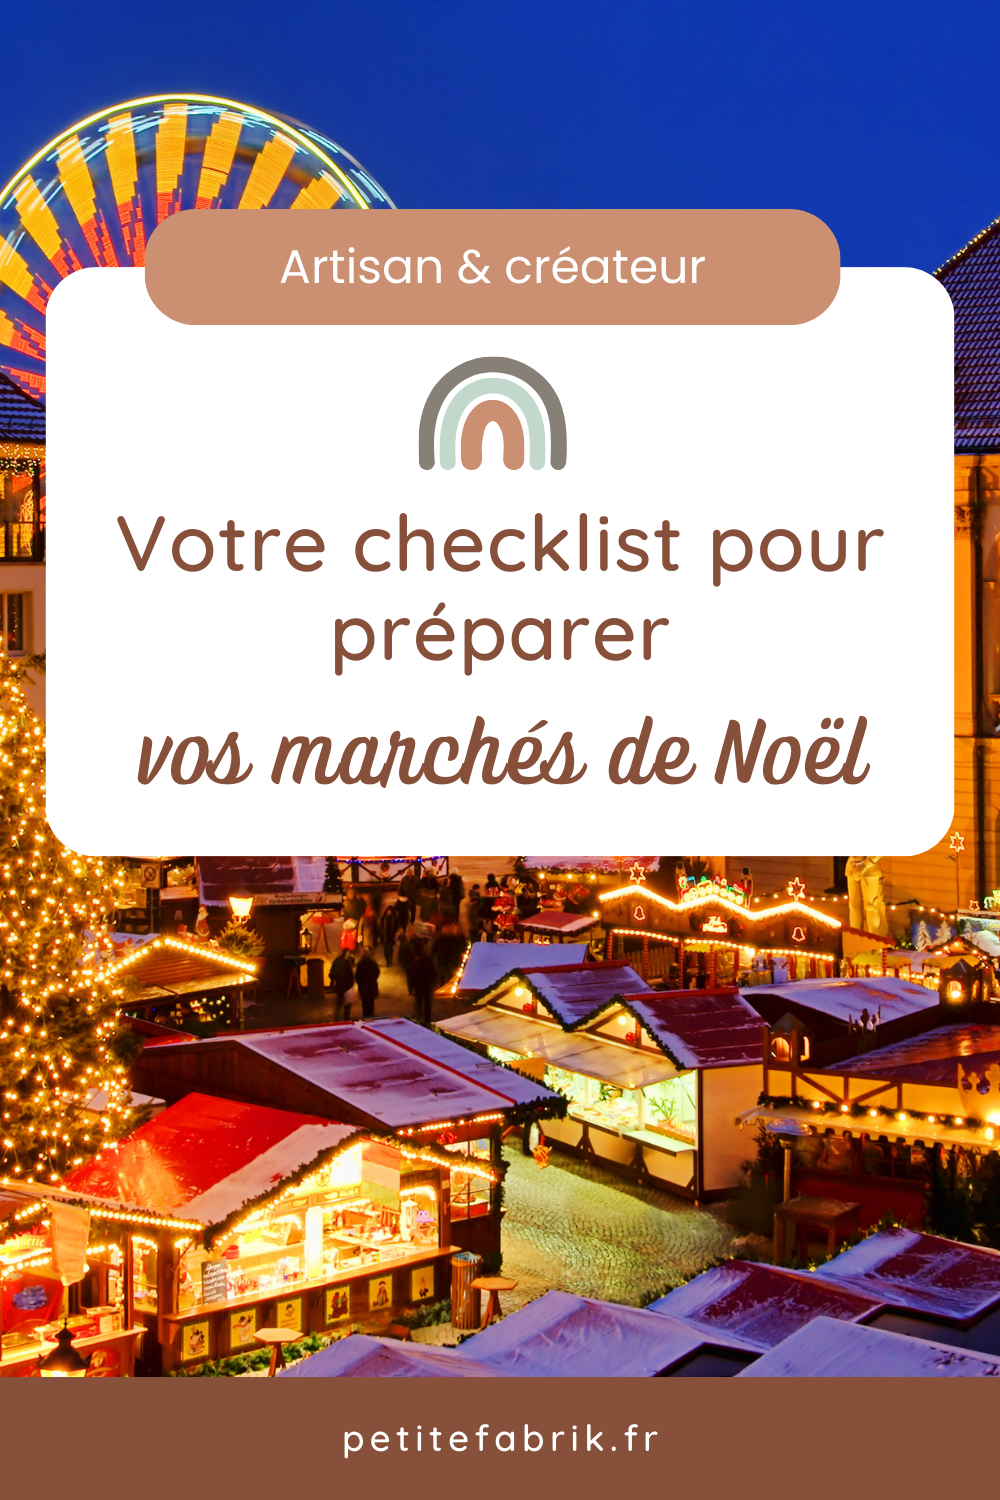 La checklist de l'artisan créateur pour préparer vos marchés de Noël